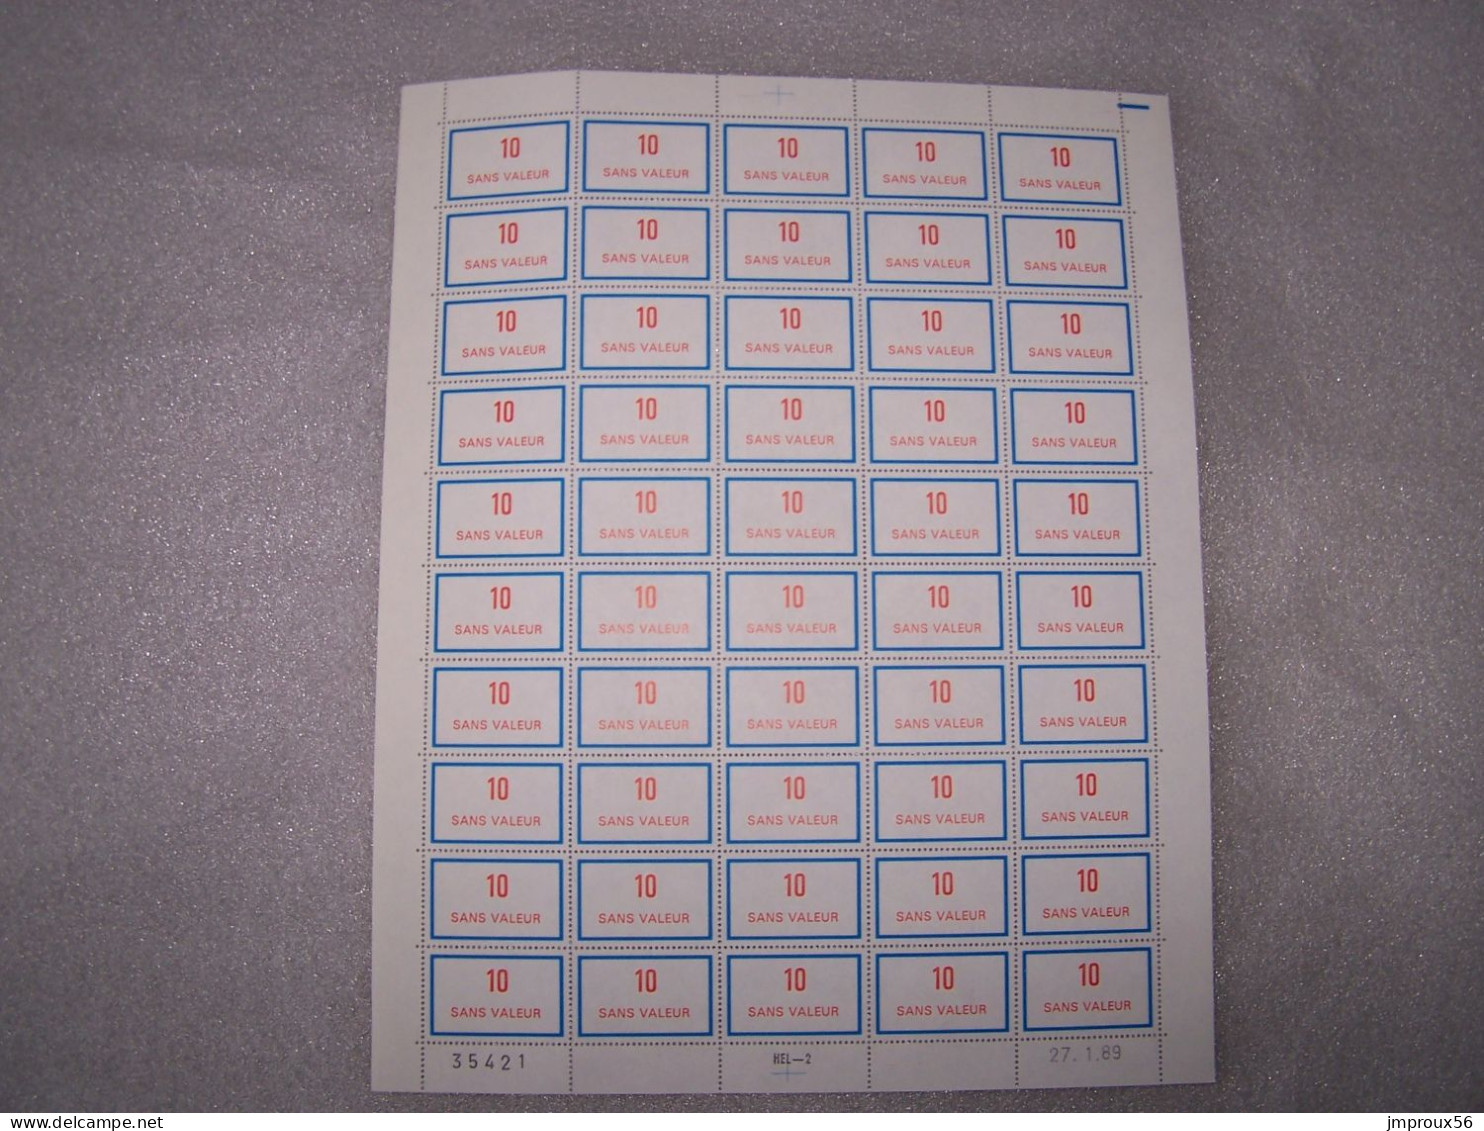 18 Feuilles timbres Fictifs pour l'instruction (F199,F211,F212,F215....)